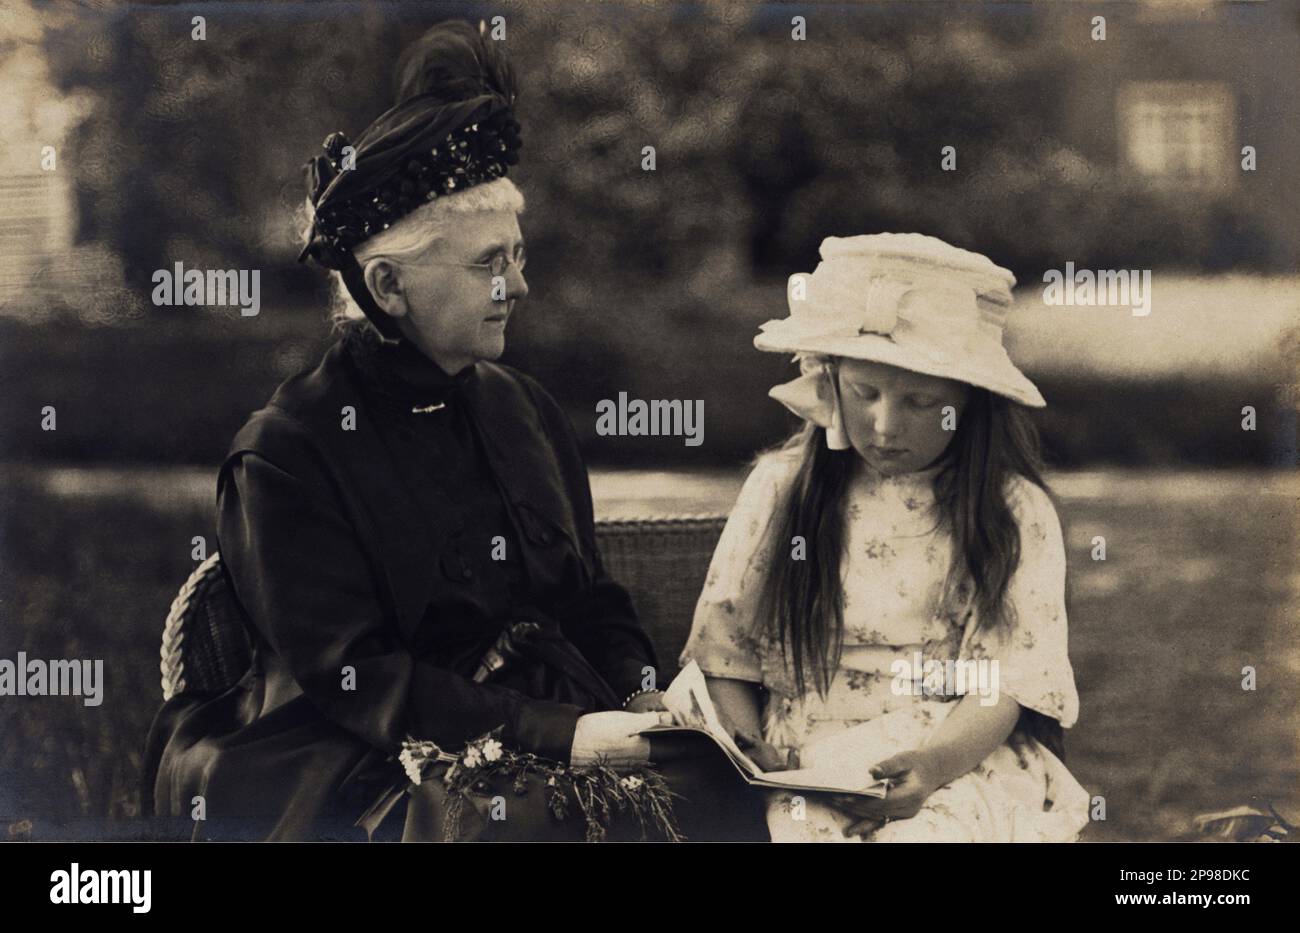 1916 ca , Paesi Bassi : la futura regina GIULIANA (1909 - 2004) dei Paesi Bassi con la nonna principessa Maria di Schwarzburg-Rudolstadt. . Foto di H. Deutmann , Den Haag . Figlia della regina WILHELMINA ( di Orange-Nassau , 1880 – 1962 ) sposò nel 1901 il duca Heinrich Wladimir Albrecht Ernst di Meclemburgo-Schwerin ( 1876 – 1934 ). Il 4 settembre 1948, dopo un regno di 58 anni e 50 giorni, Wilhelmina abdicò a favore di sua figlia Juliana . - REALI - ROYALTY - nobili - Nobiltà - nobiltà - OLANA - PAESI BASSI - OLANDA - REGINA - cappello - cappello - lettore - letto - le Foto Stock